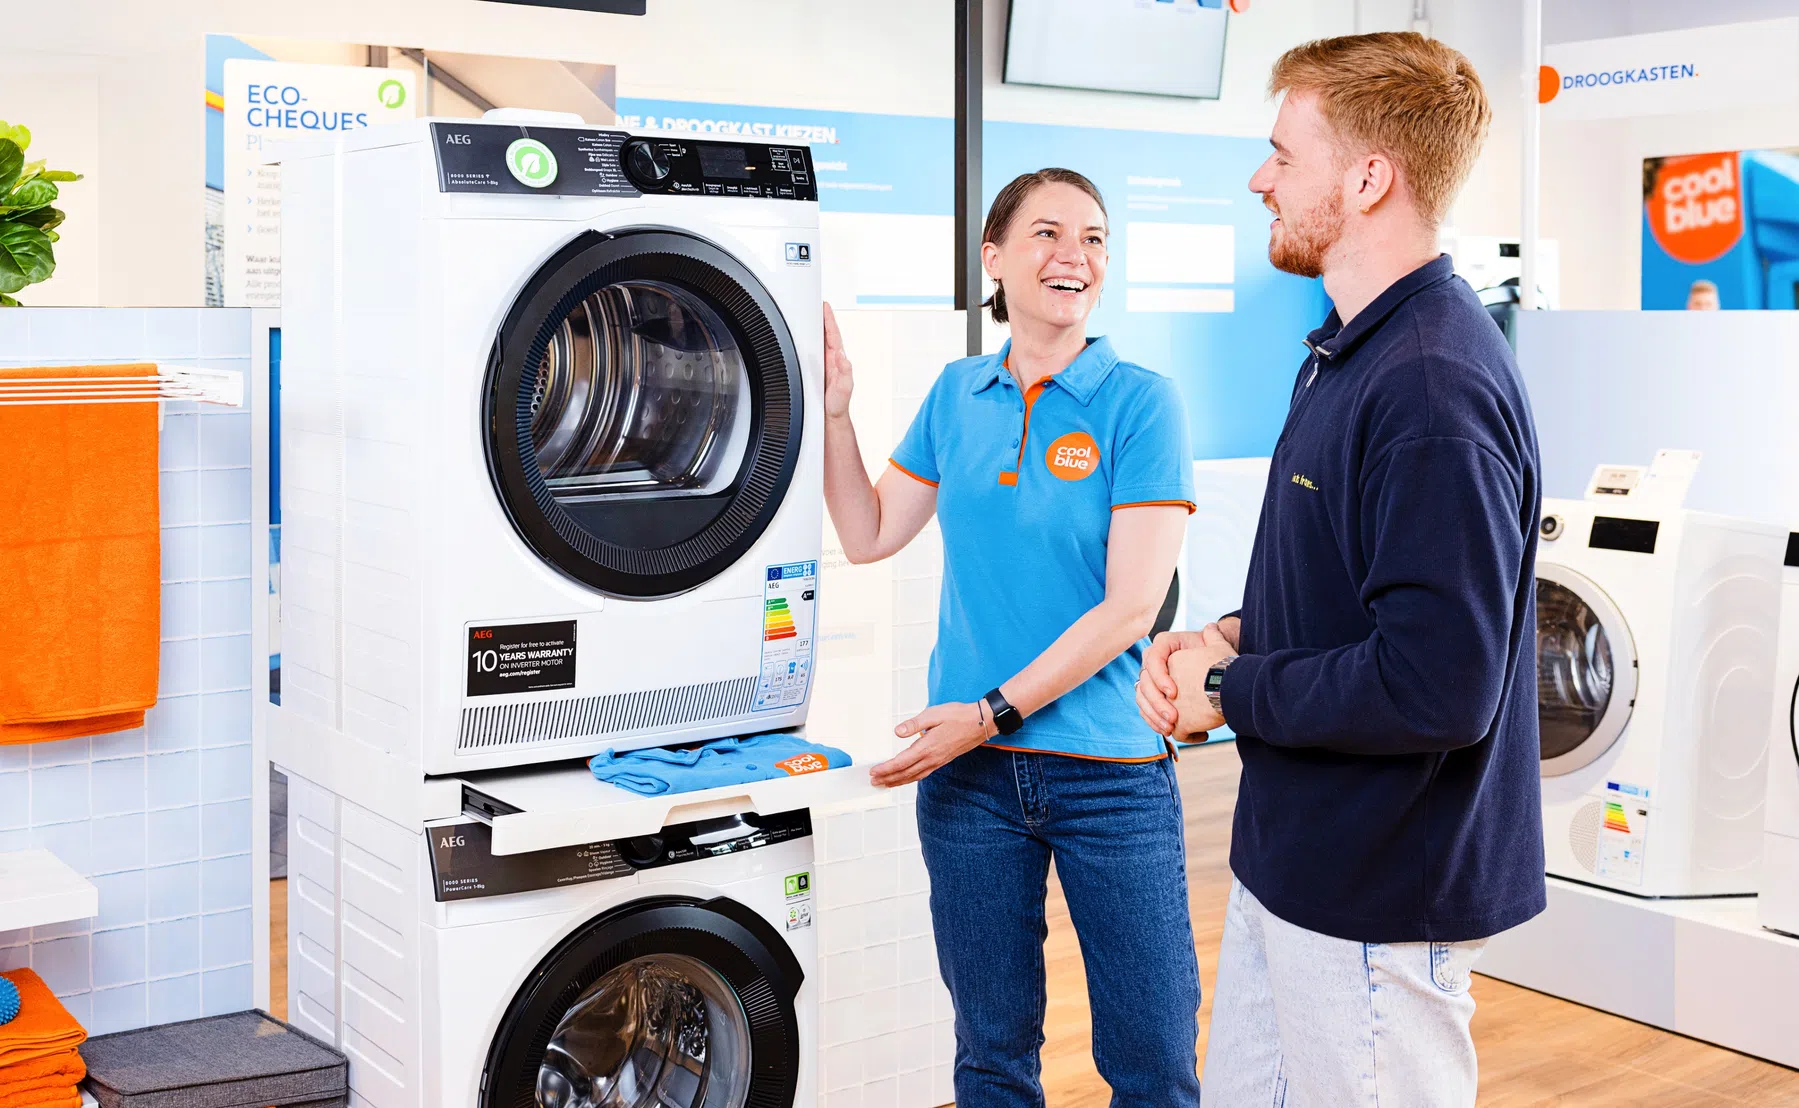 Coolblue komt met een wasmachine die gratis wasjes draait